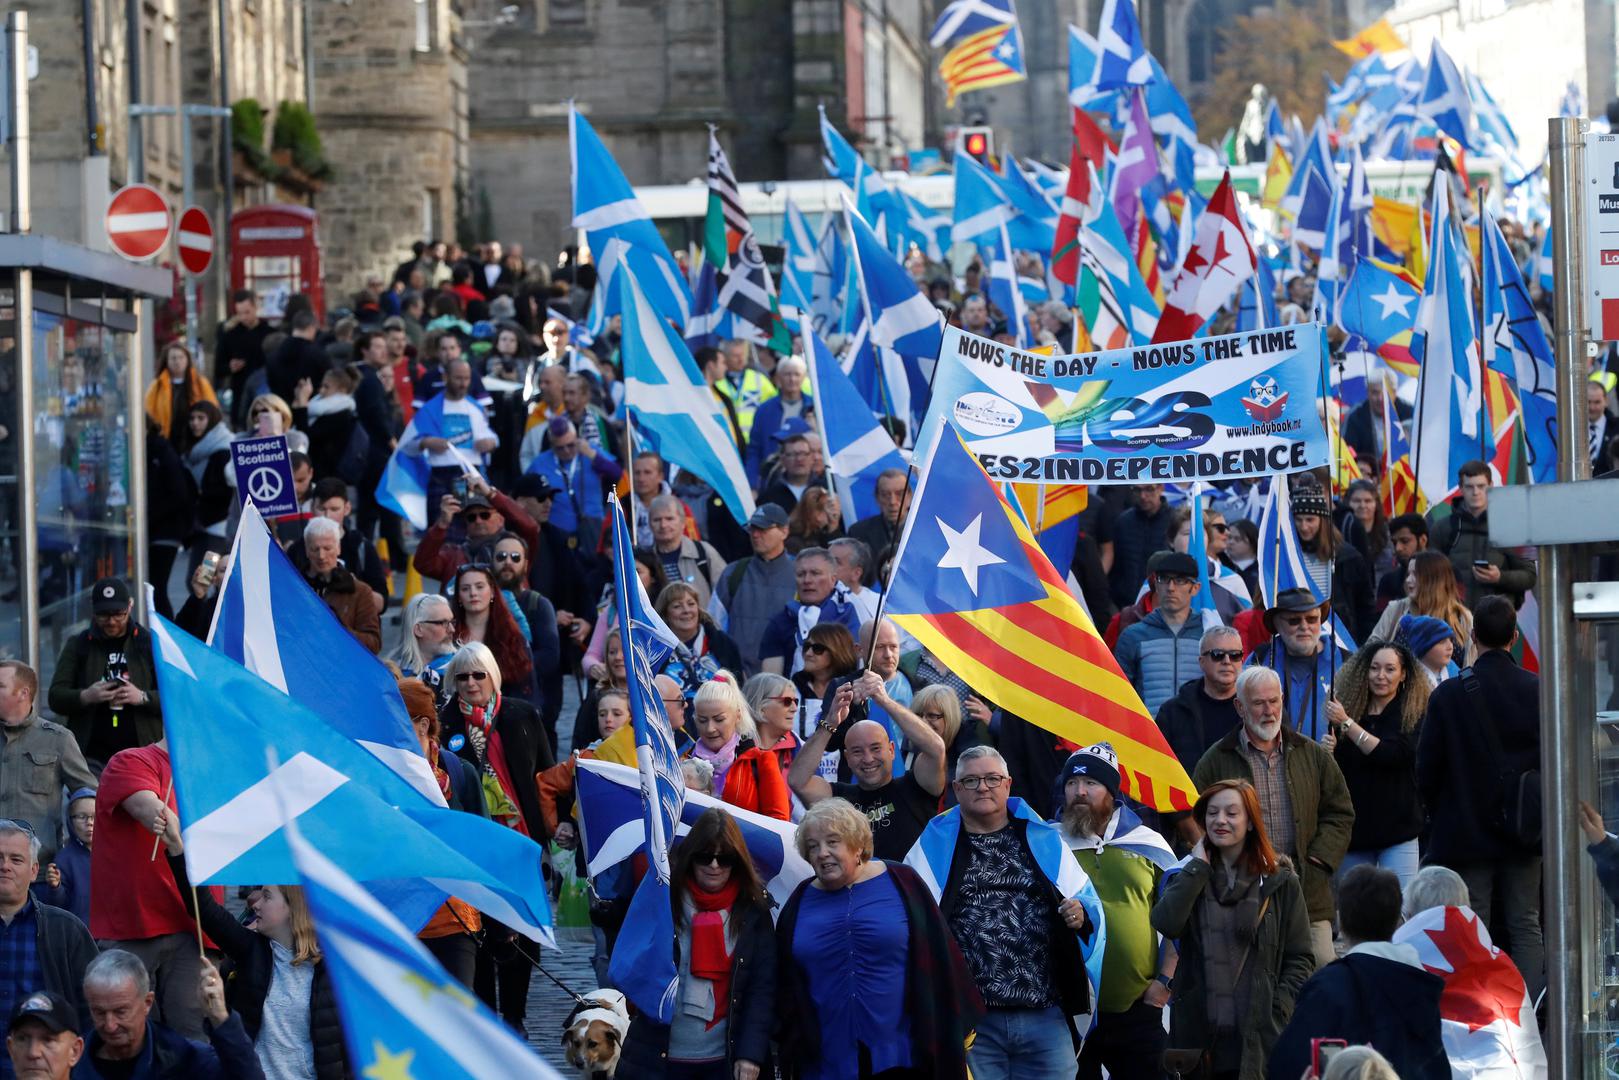 Premijerka Nicola Sturgeon koja vodi Škotsku nacionalnu stranku (SNP) najavila je da će svoj prijedlog o novom referendumu o neovisnosti objaviti "kada budu jasni uvjeti Brexita".